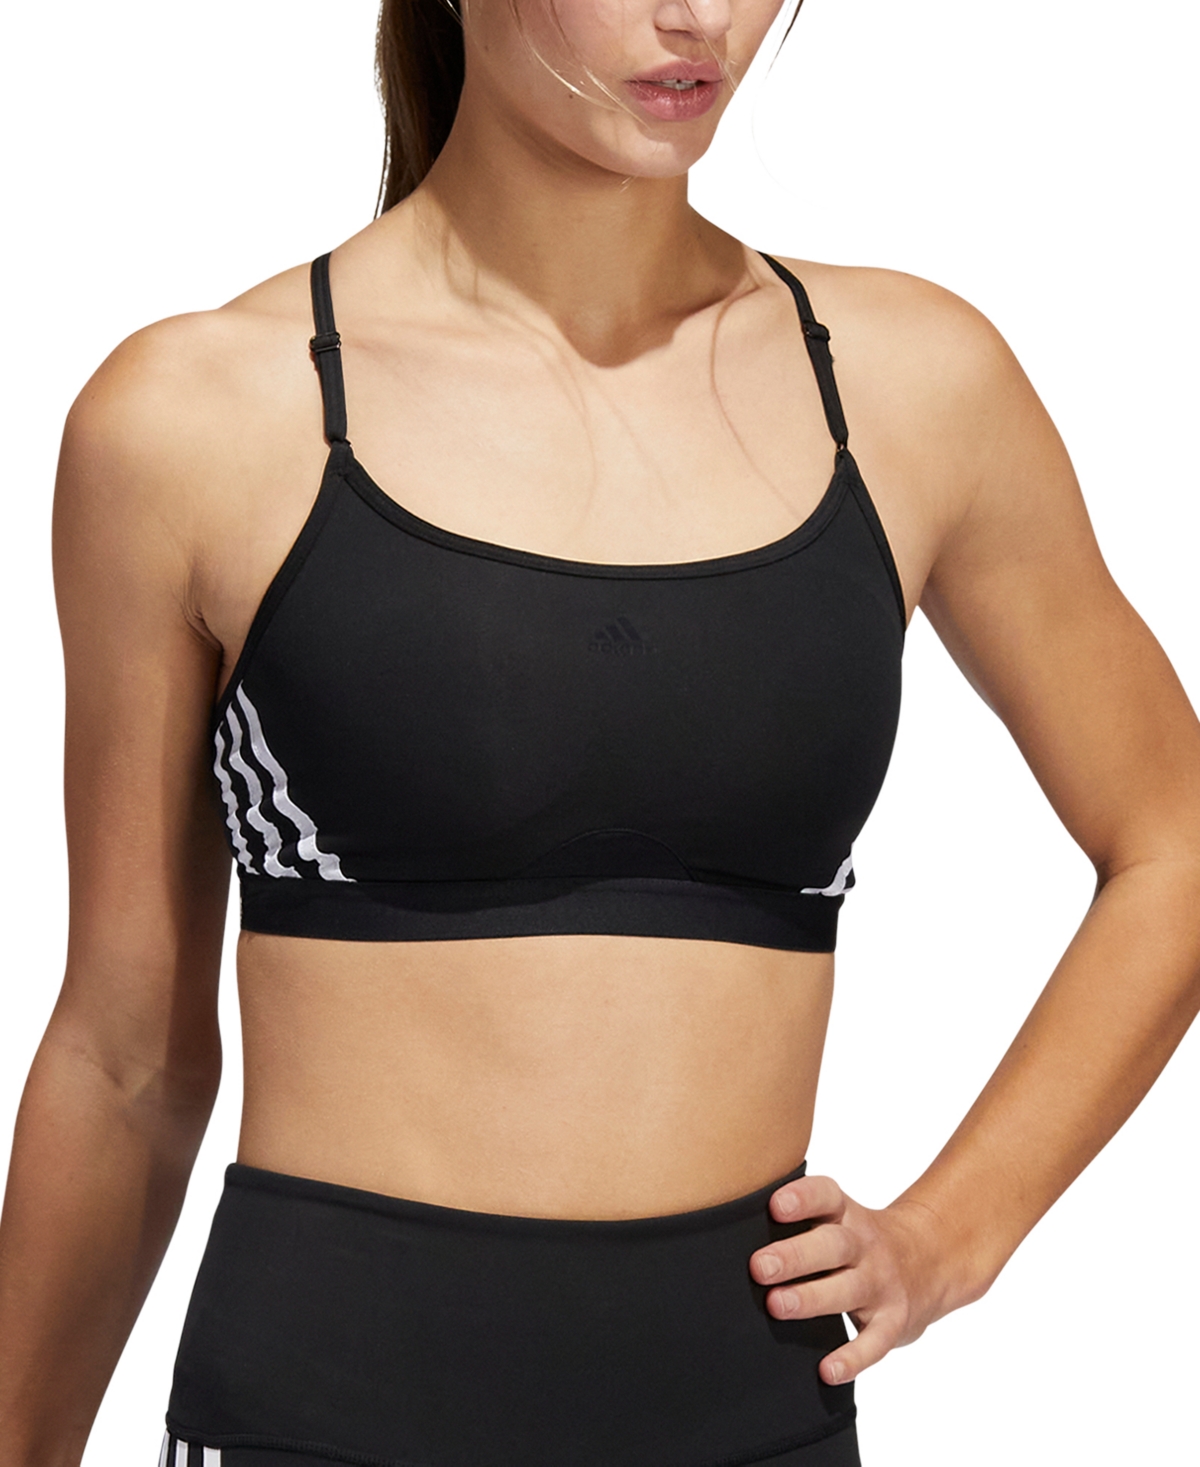 Adidas Originals Women's Aeroreact 3-stripes Low-impact Sports Bra In Black,white